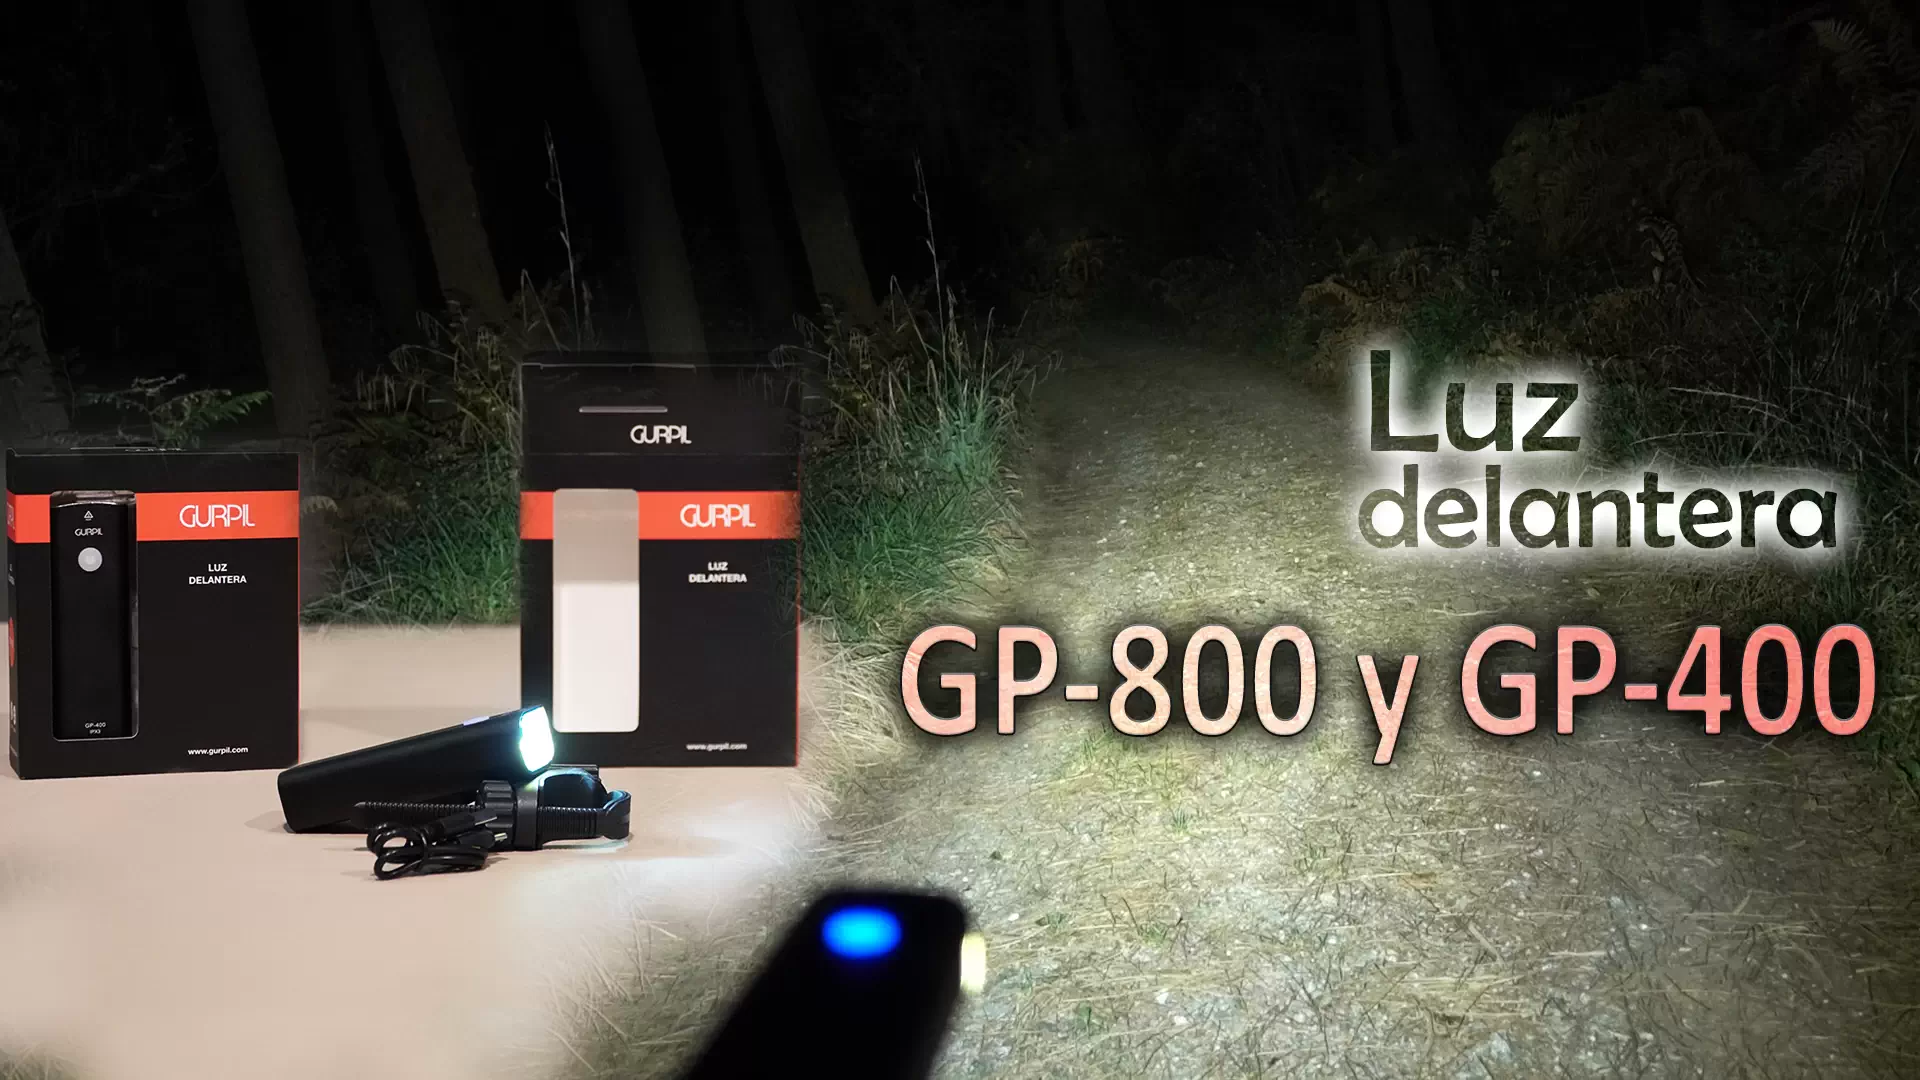 Dos luces delanteras para ver en la oscuridad: Gurpil GP-800 y GP-400